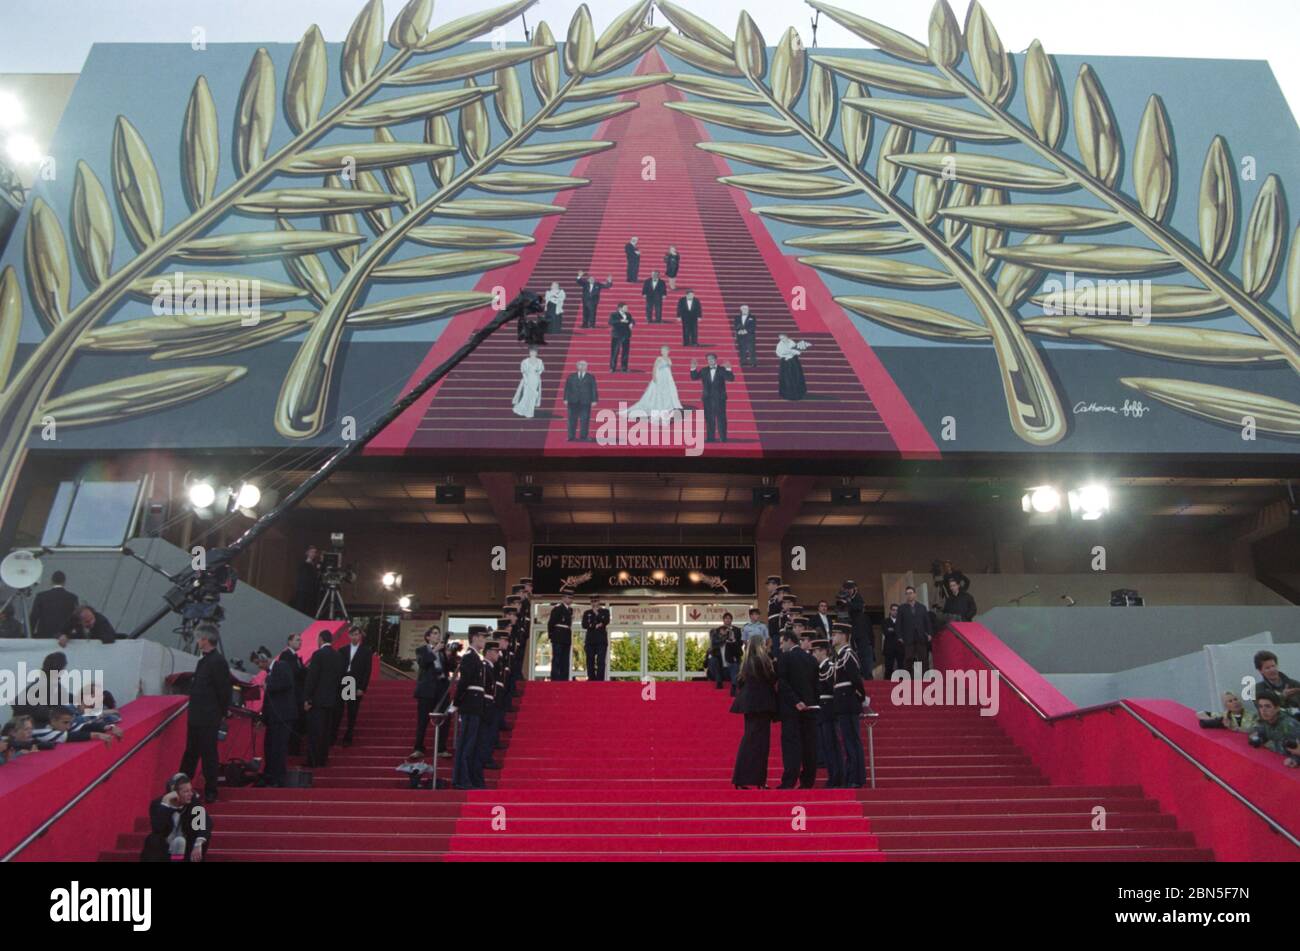 CANNES, FRANCIA. 1997 maggio: Scalinata di tappeti rossi del Palais des Festivals al 50° Festival del Film di Cannes. Foto file © Paul Smith/Featureflash Foto Stock